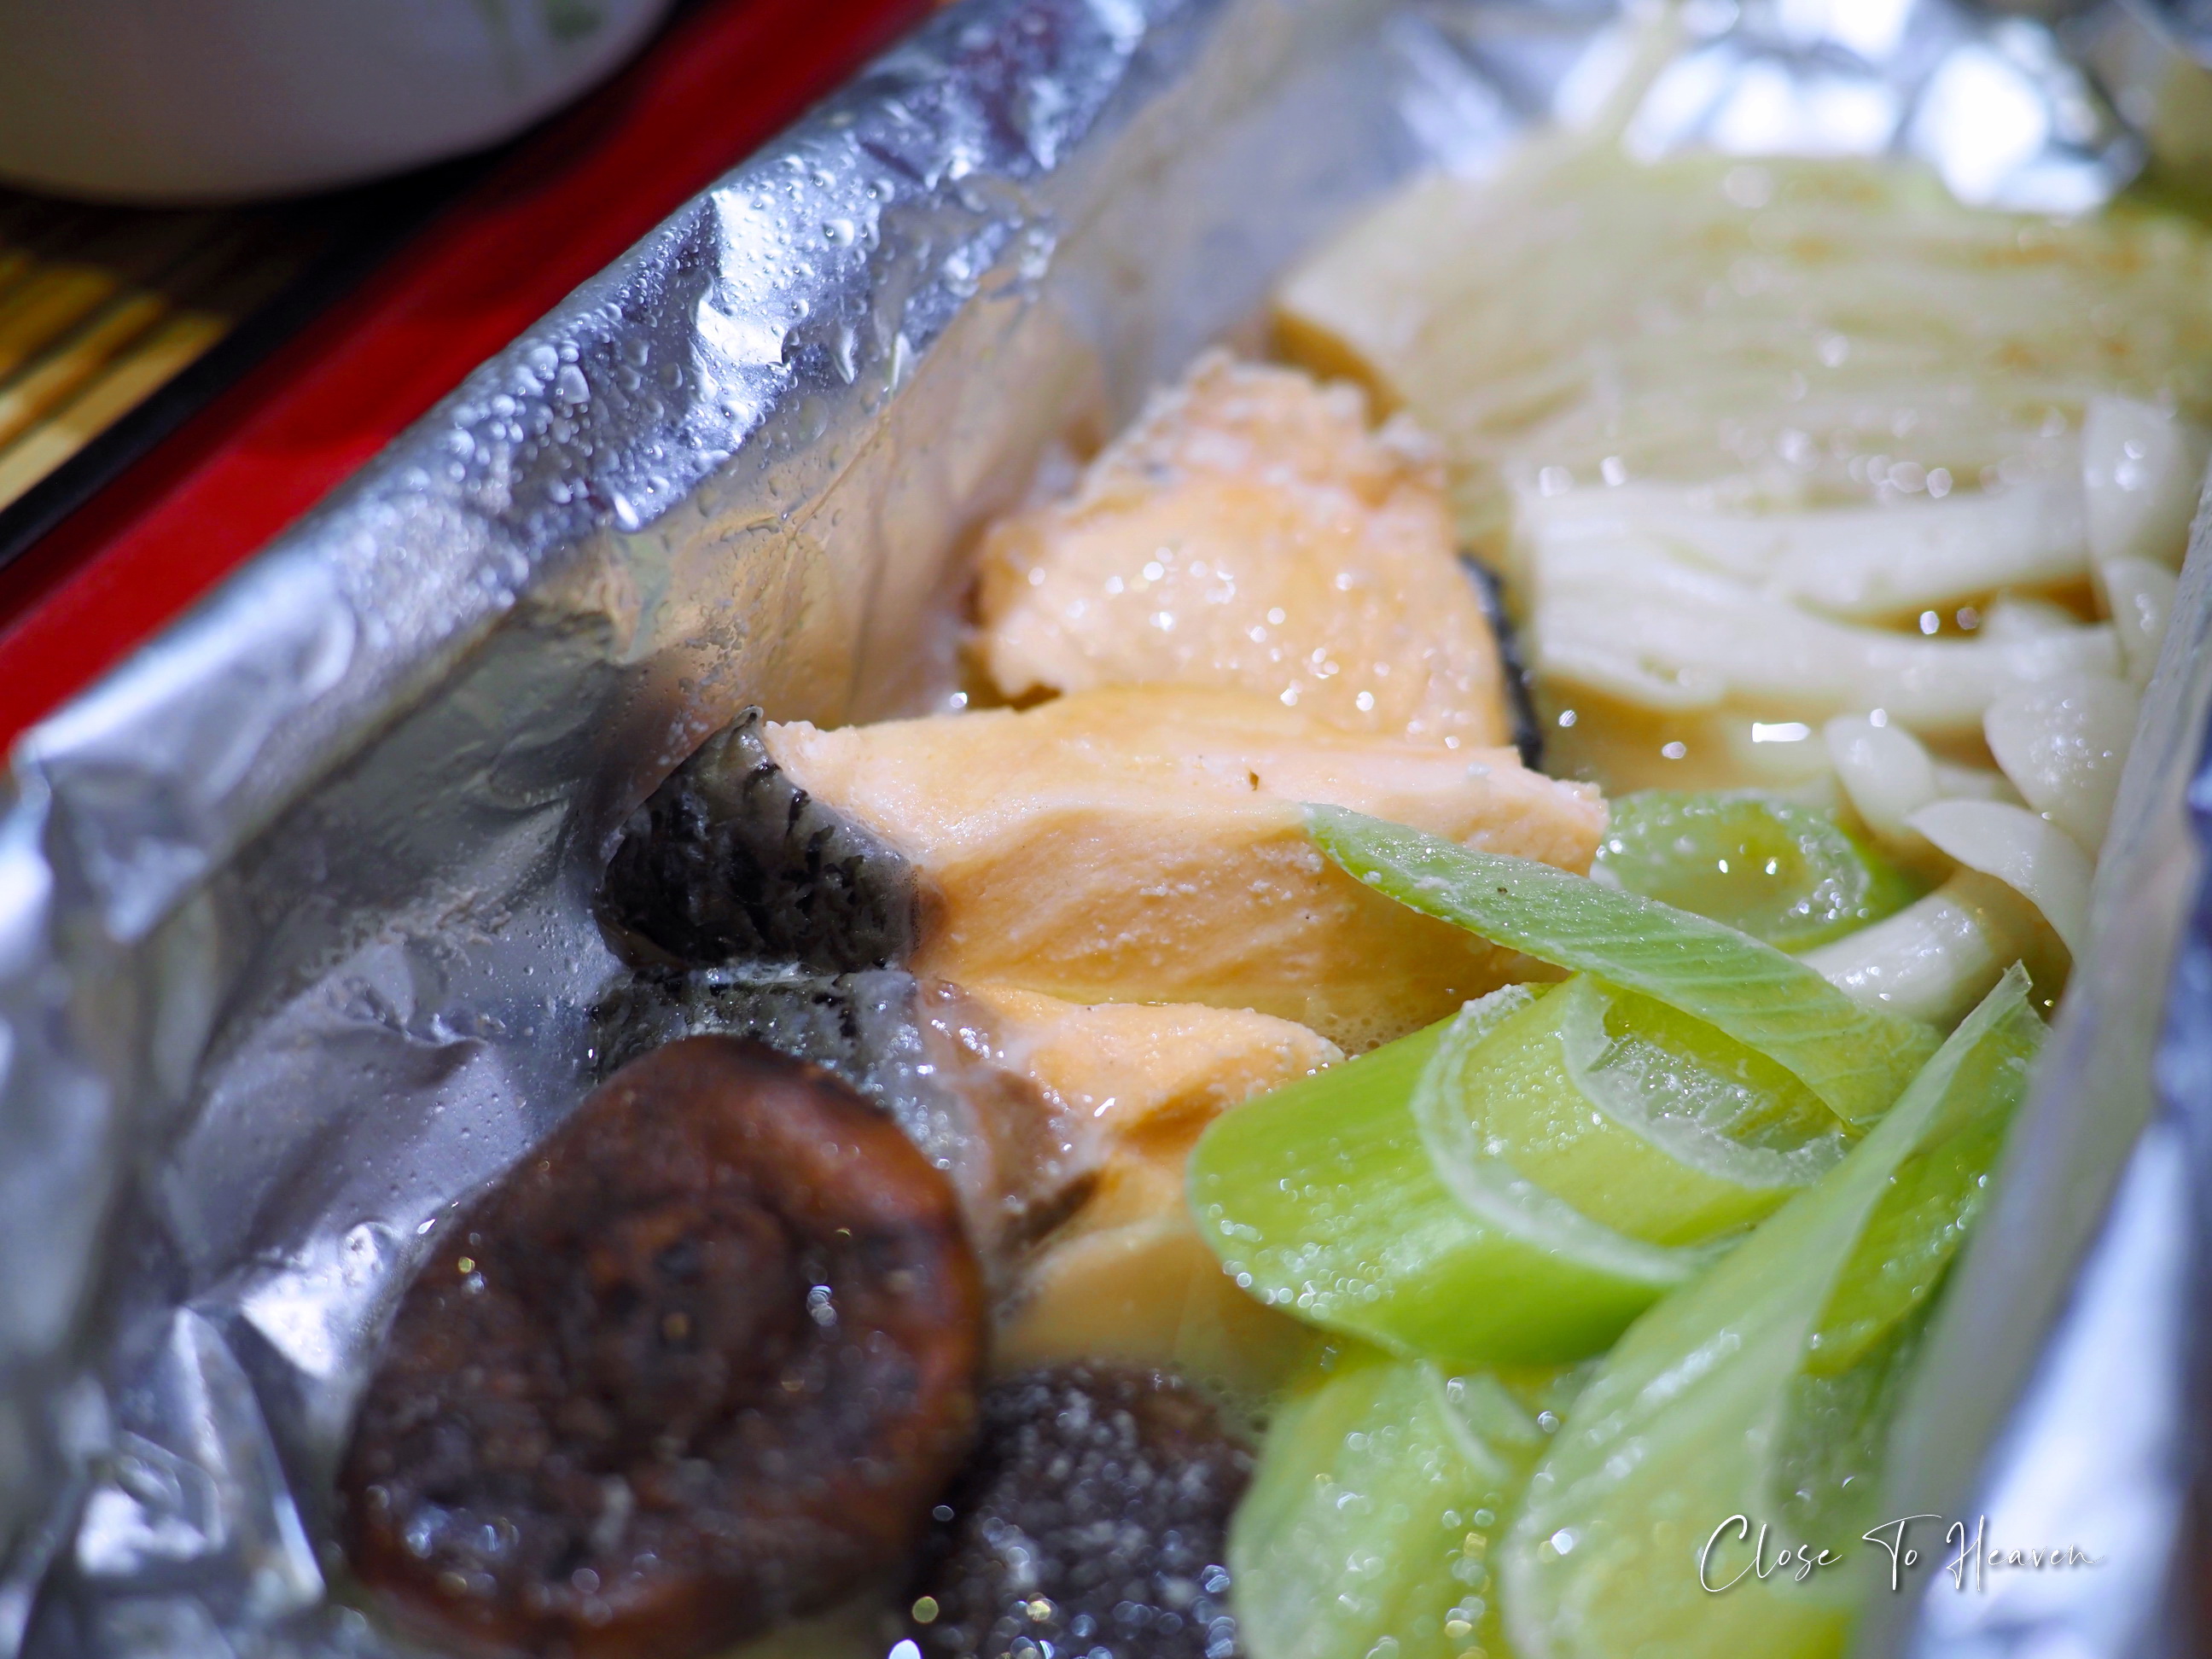 บุฟเฟ่ต์อาหารญี่ปุ่น @ Hagi | Centara Grand Ladprao